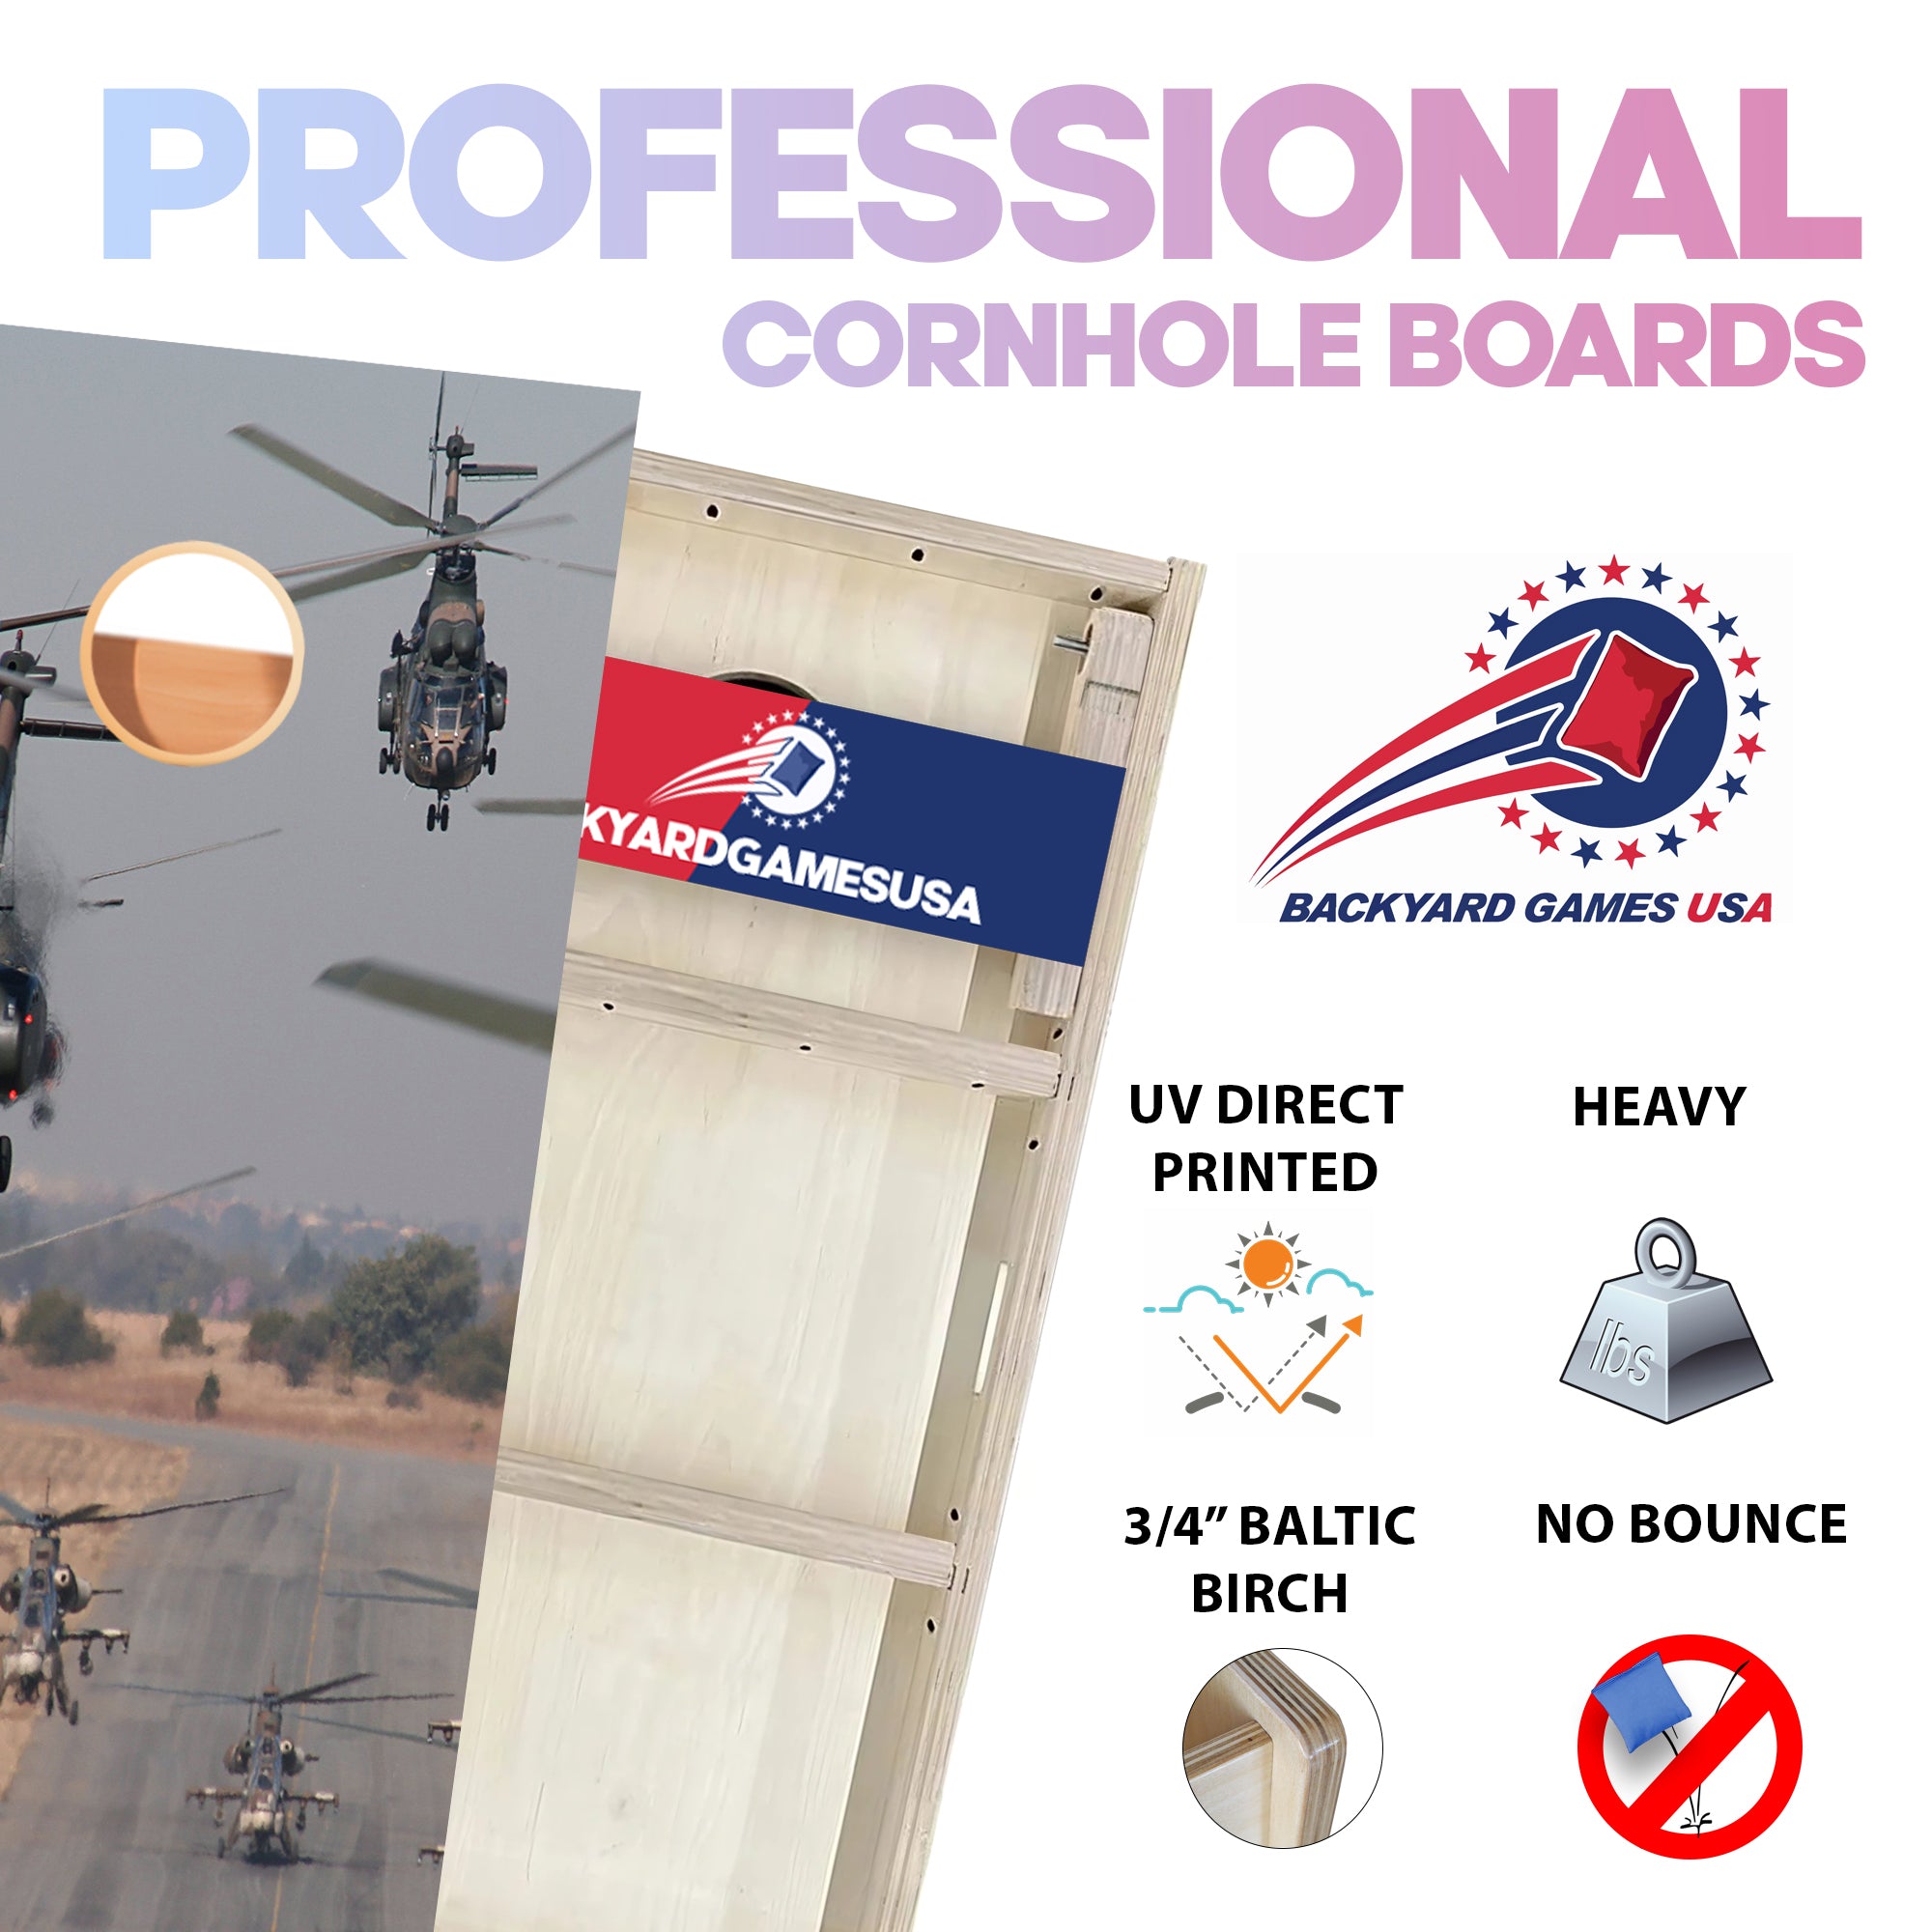 Fleet of Chopper Professional Cornhole Boards